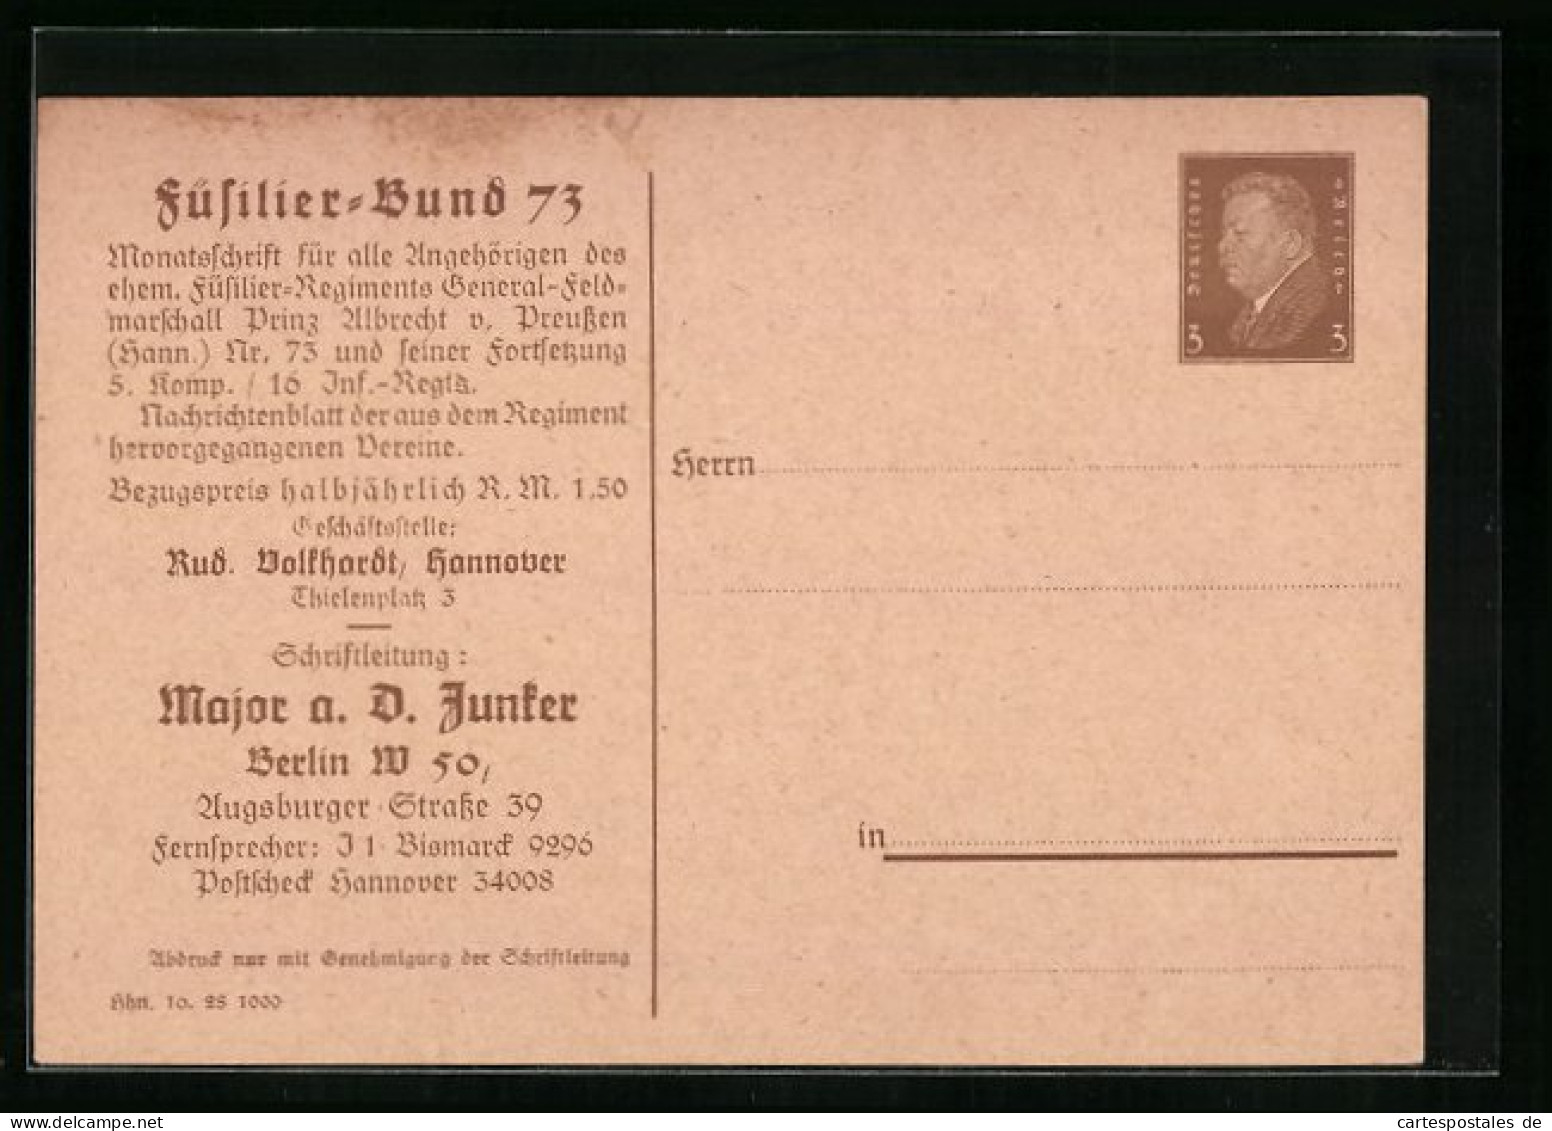 AK Ganzsache PP106B3: Karte Des Füsilier-Bund 73, Schriftleitung Major A. D. Junker  - Regiments